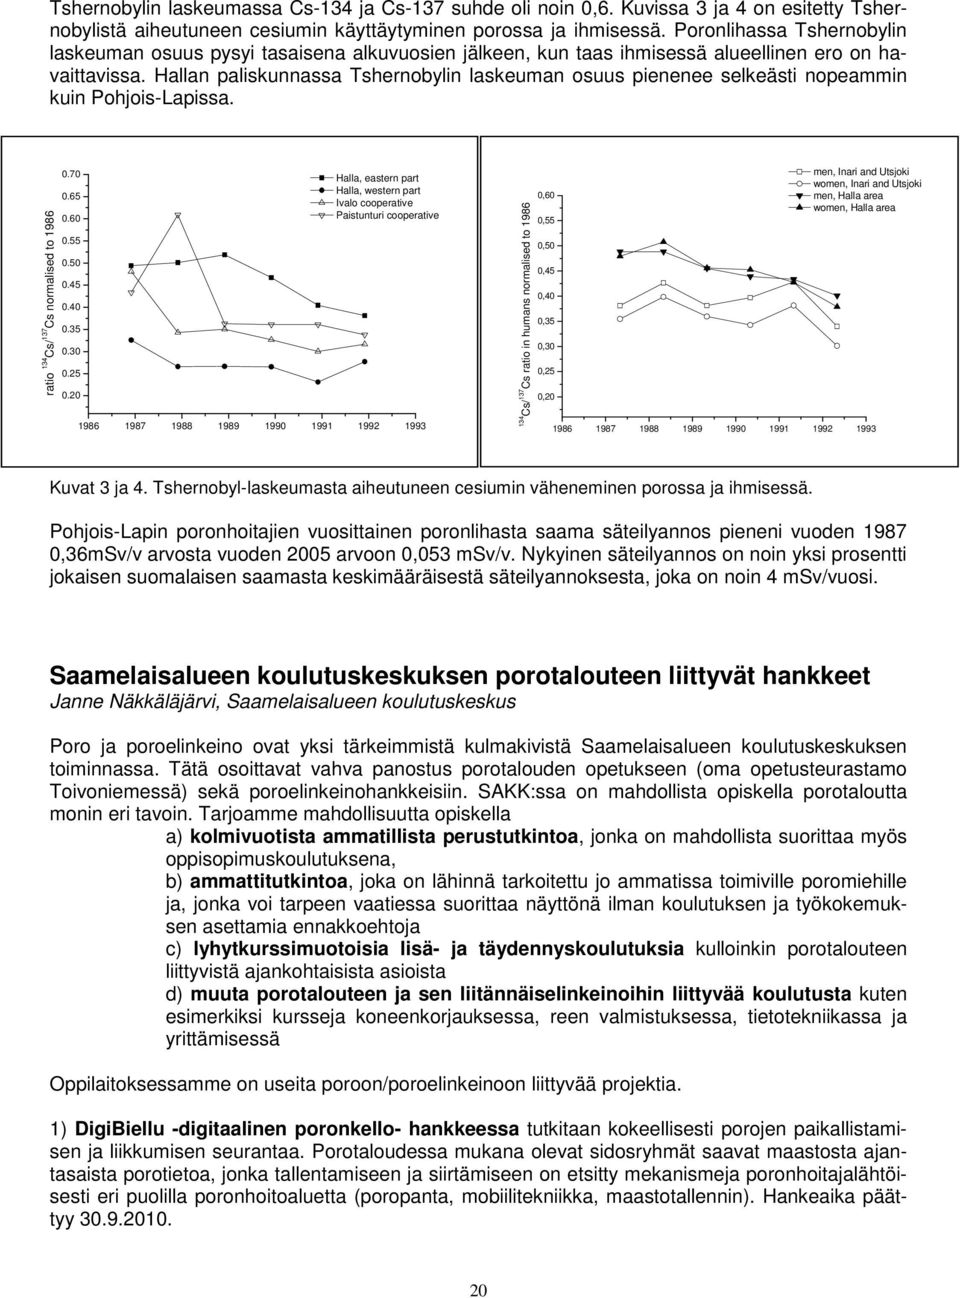 Hallan paliskunnassa Tshernobylin laskeuman osuus pienenee selkeästi nopeammin kuin Pohjois-Lapissa. ratio 134 Cs/ 137 Cs normalised to 1986 0.70 0.65 0.60 0.55 0.50 0.45 0.40 0.35 0.30 0.25 0.